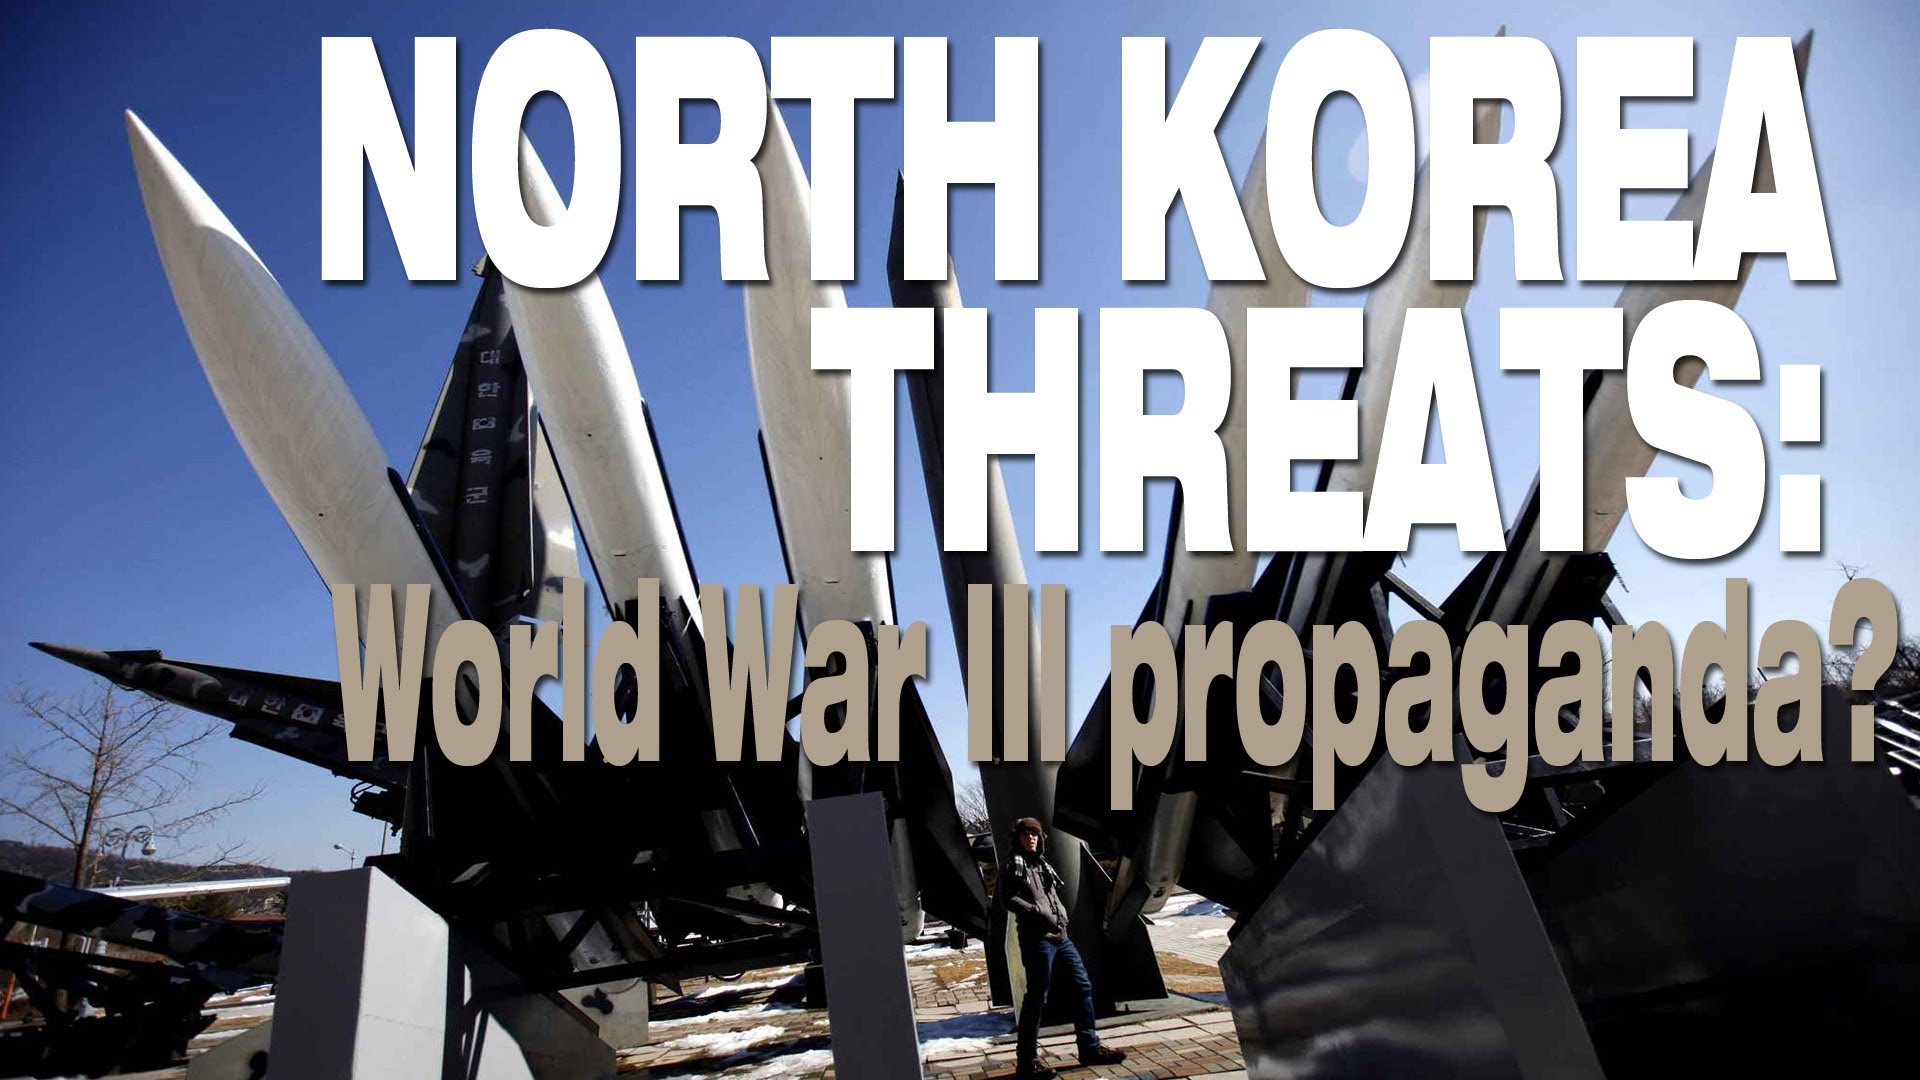 North Korea threats: World War 3 / III propaganda? (CC: English)